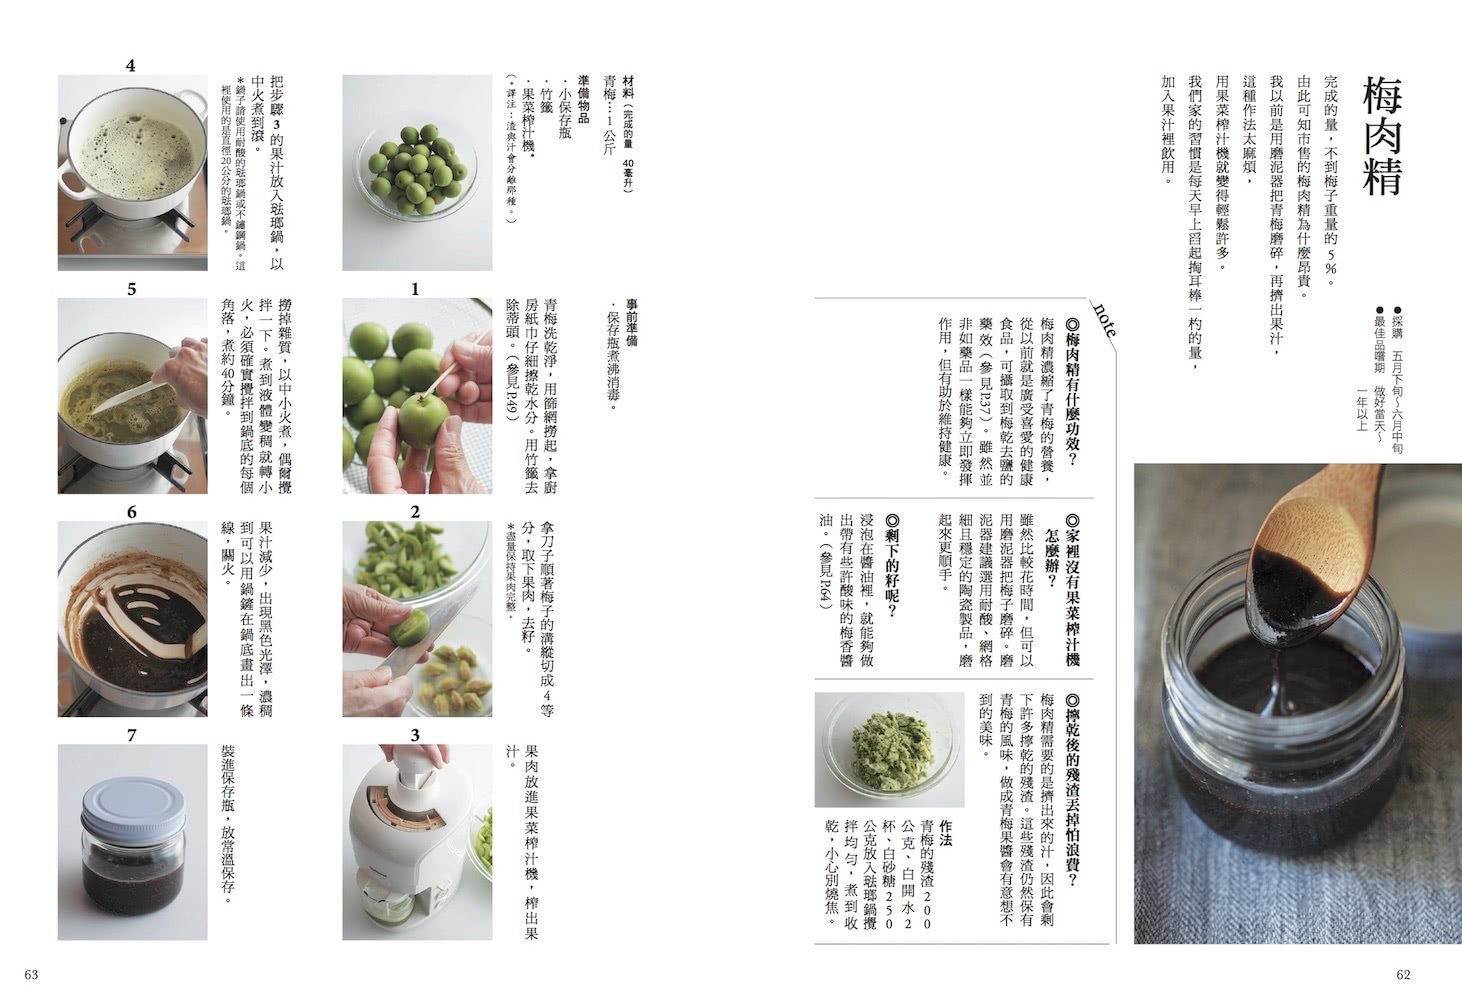 梅酒•梅乾•梅香料理――學會各種形式保存美味的方法 還能烹調出別具特色的風味料理